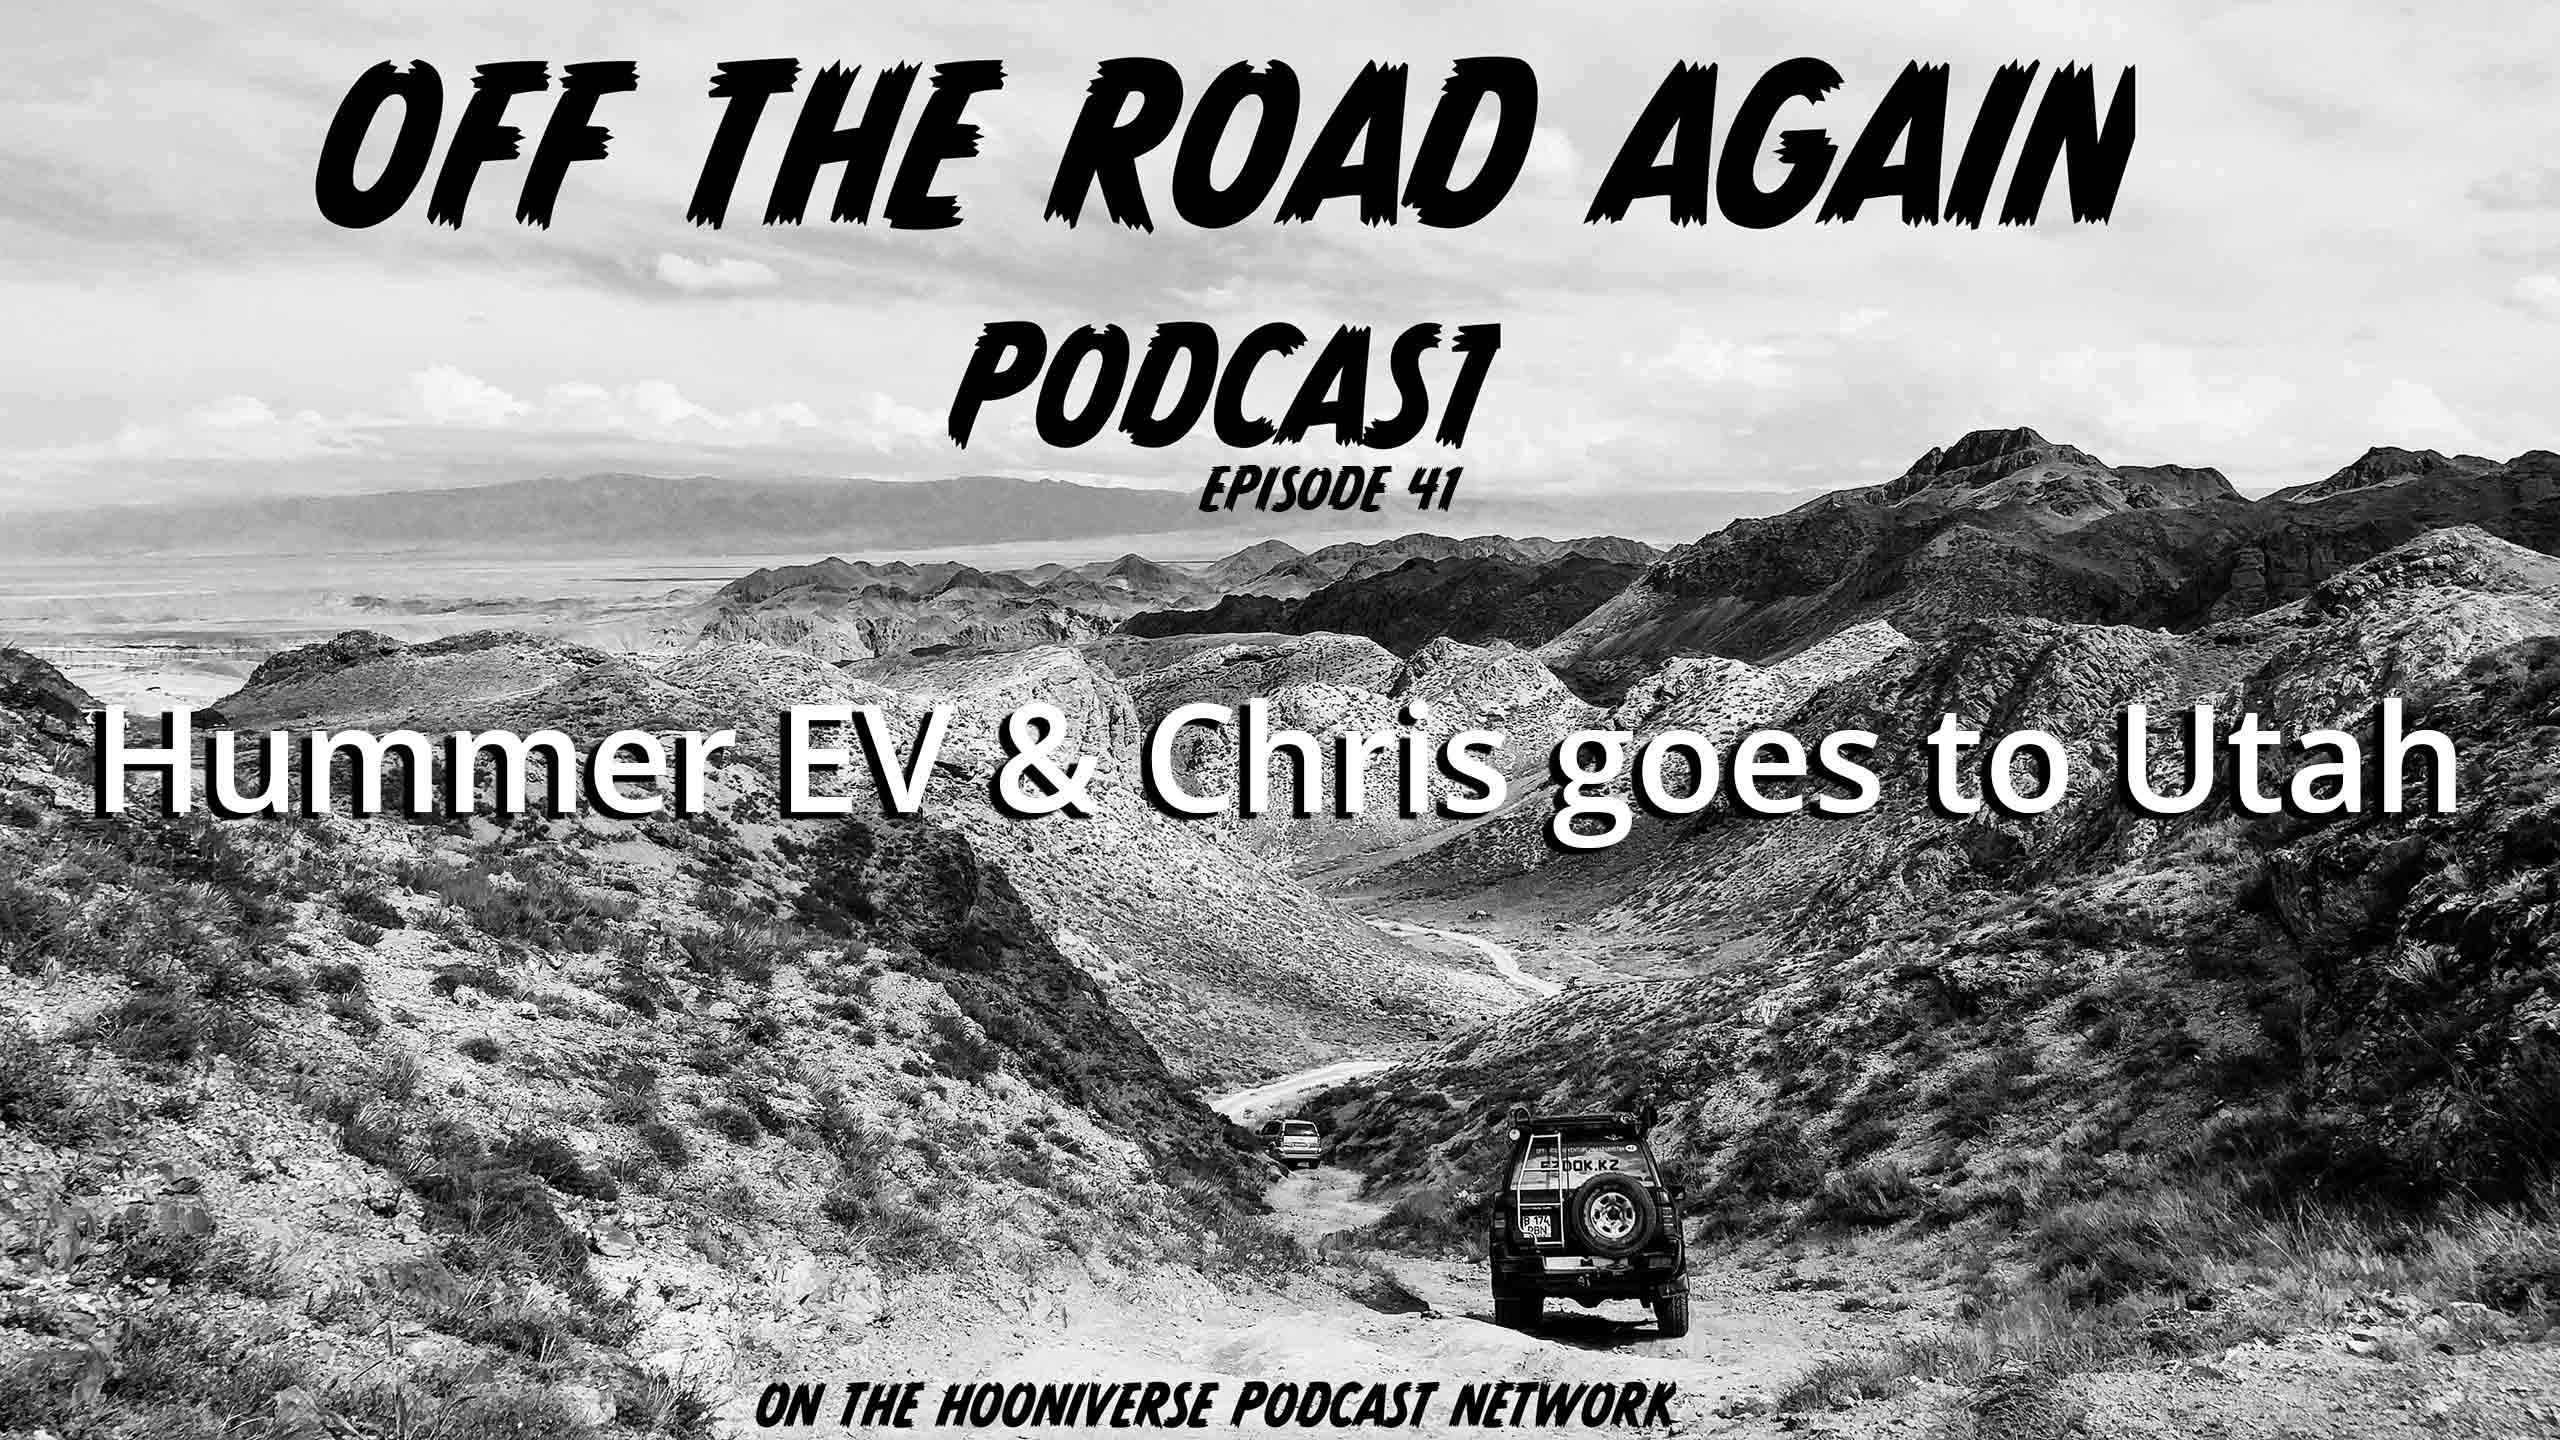 Hummer-EV-Utah--Trip-Off-The-Road-Again-Podcast-Episode-41